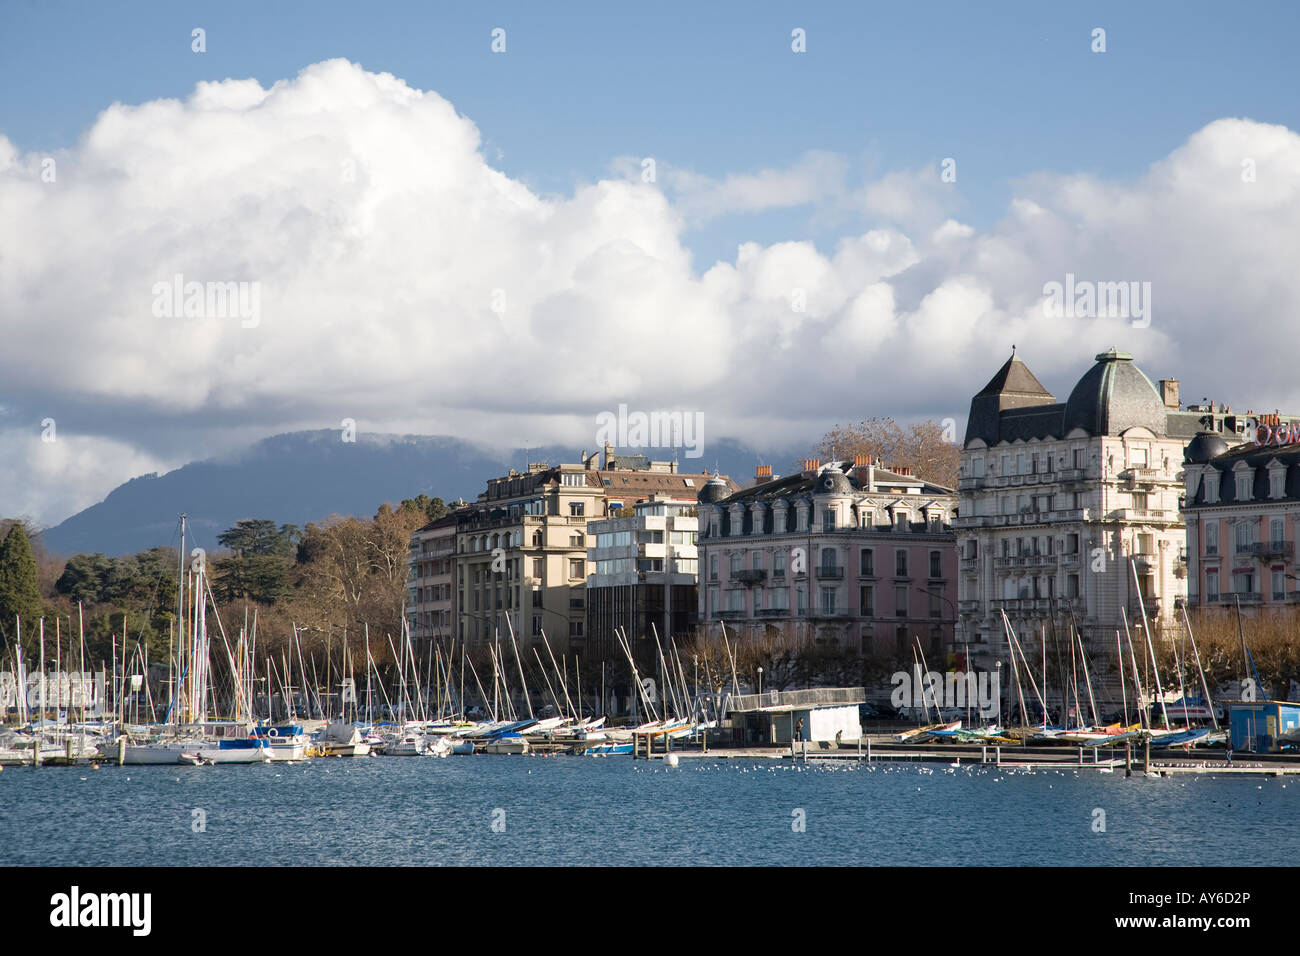 Edifici e yachts, il lago di Ginevra (Lac Leman) in inverno. Ginevra, Svizzera Foto Stock